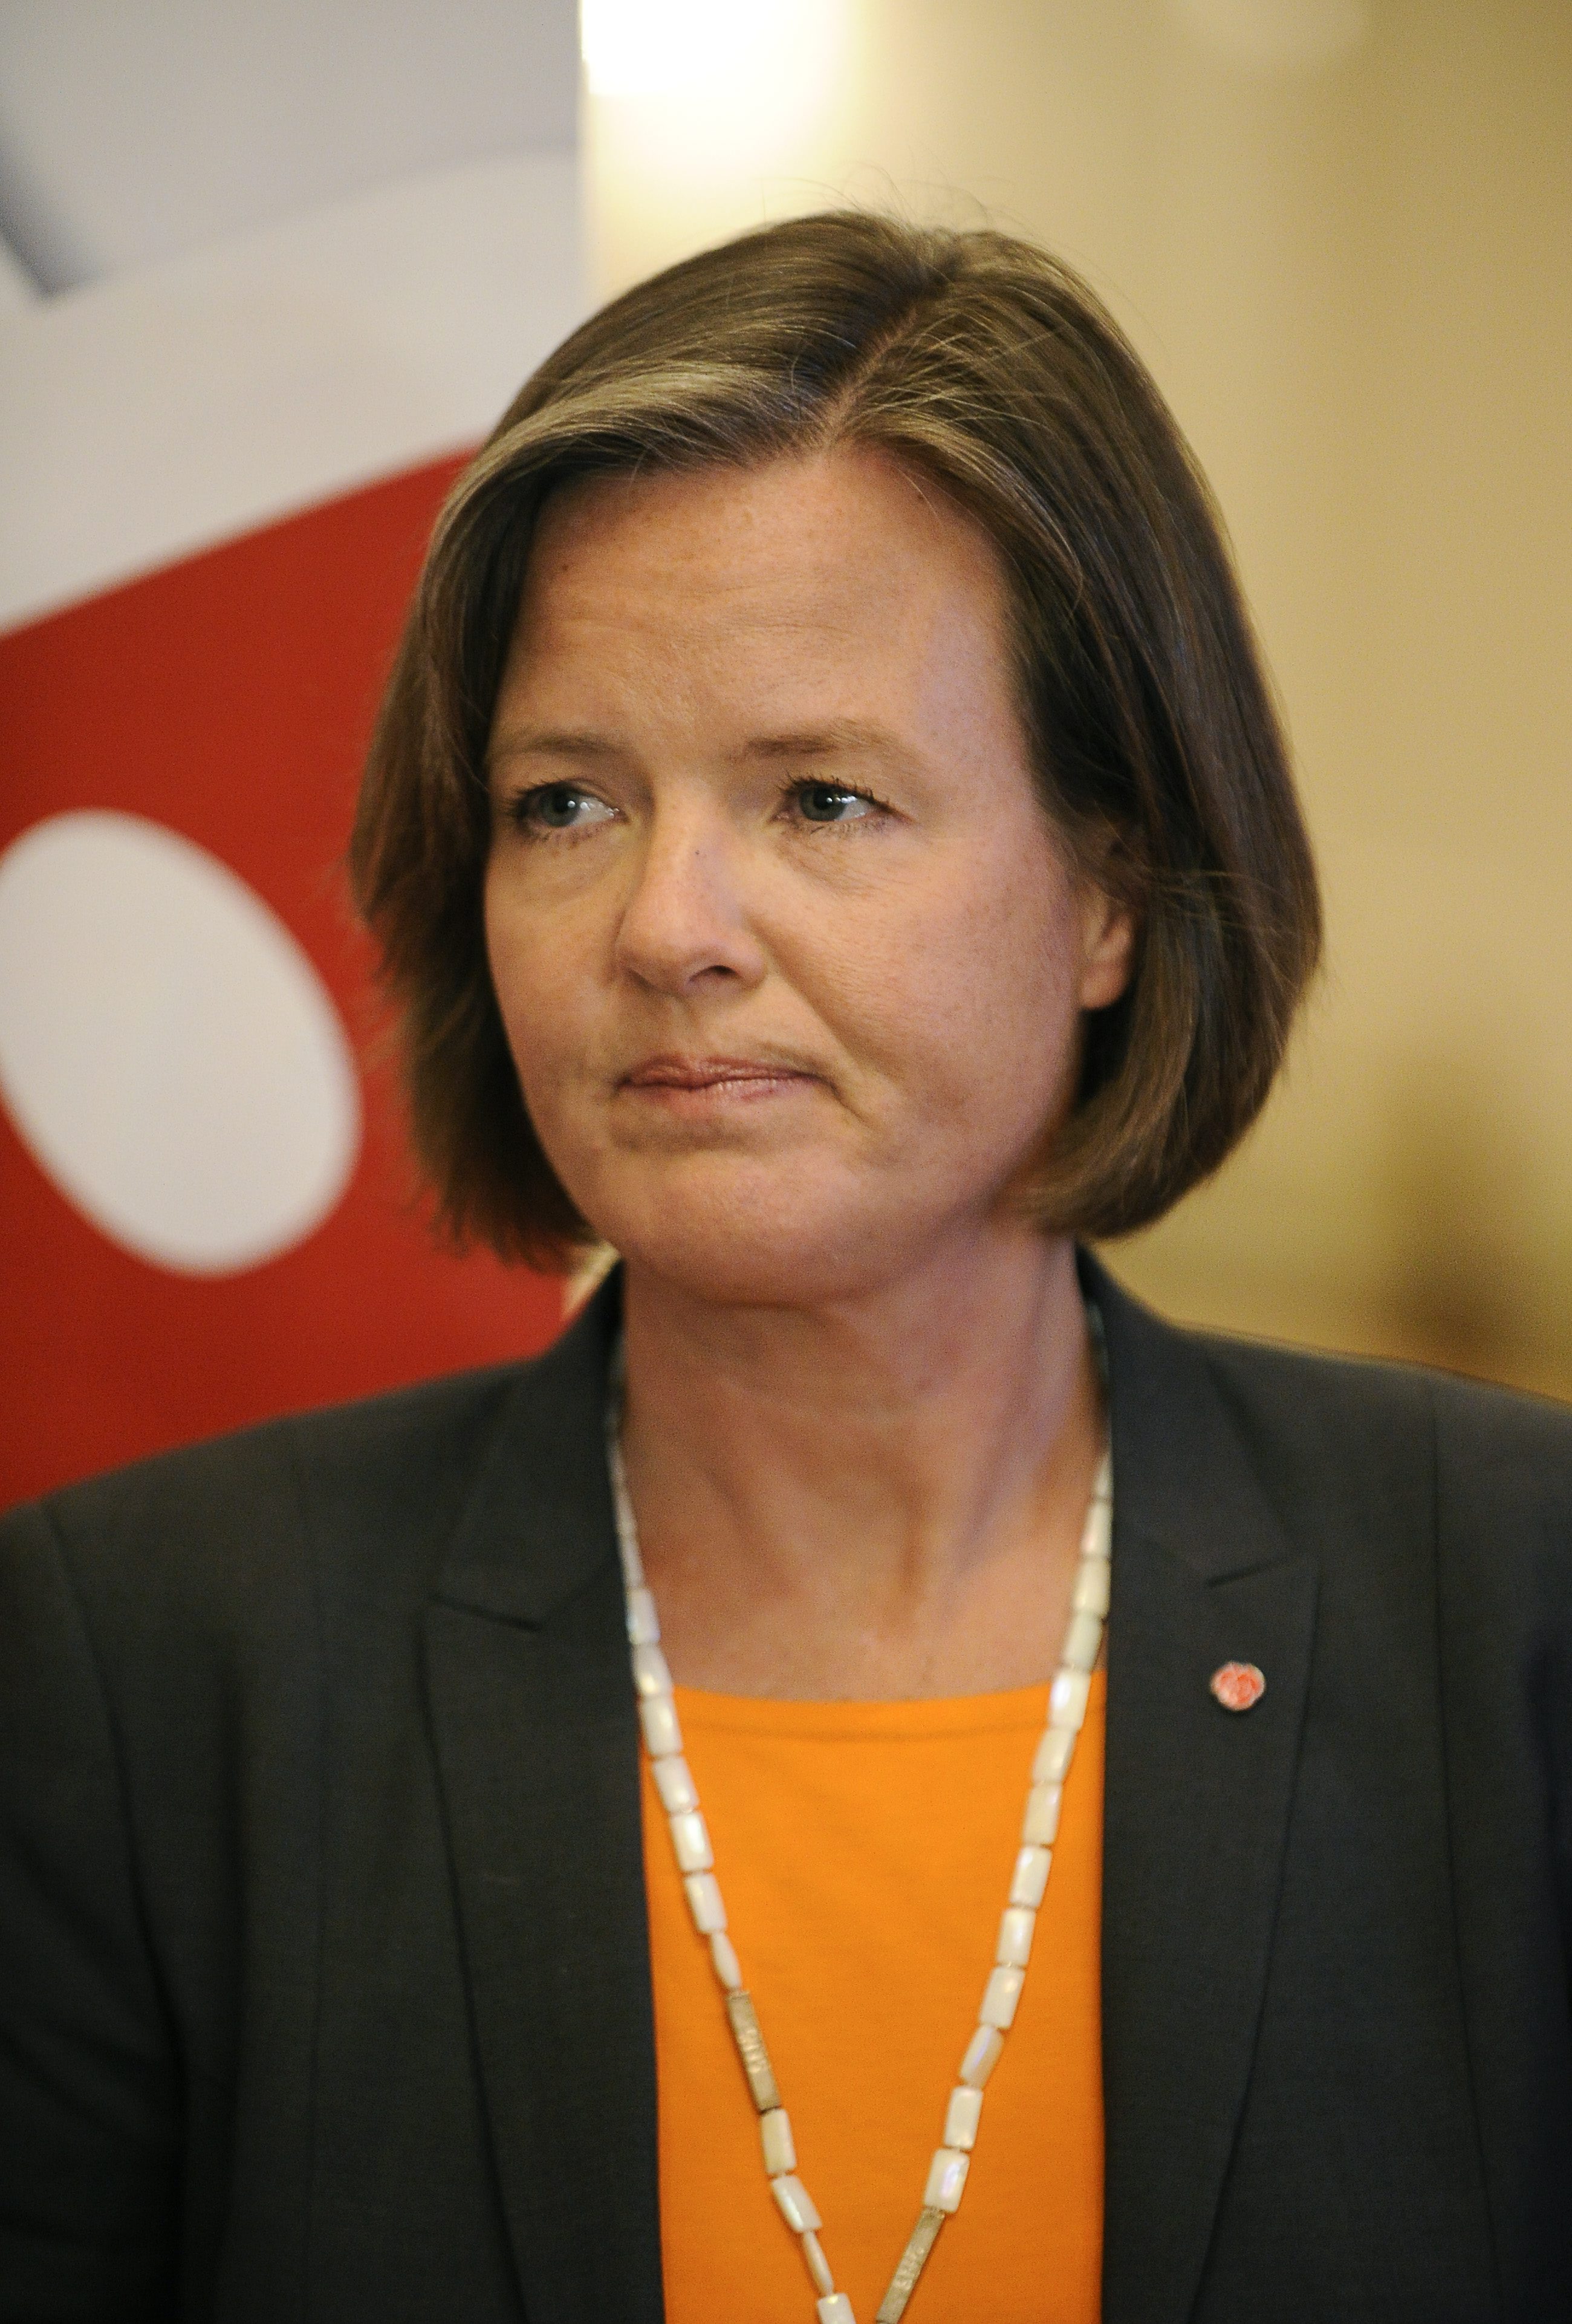 Carin Jämtin, Socialdemokraterna, Vinster i välfärden, S-kongress